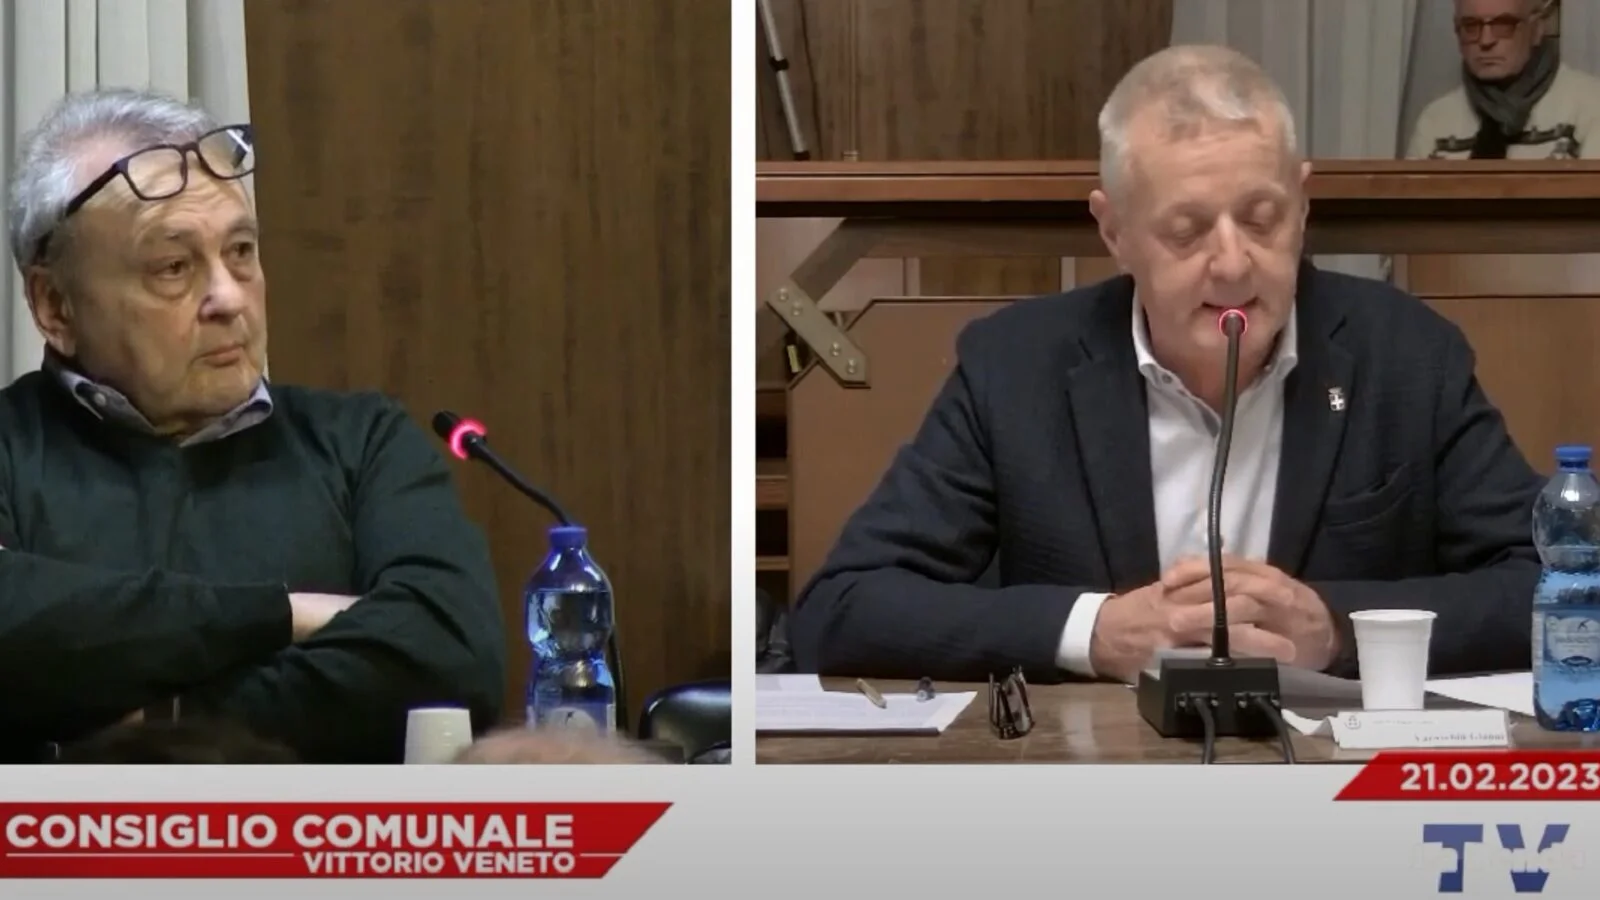 Da sinistra l'assessore Bruno Fasan e il capogruppo della lista civica “Toni Miatto sindaco” Gianni Varaschin